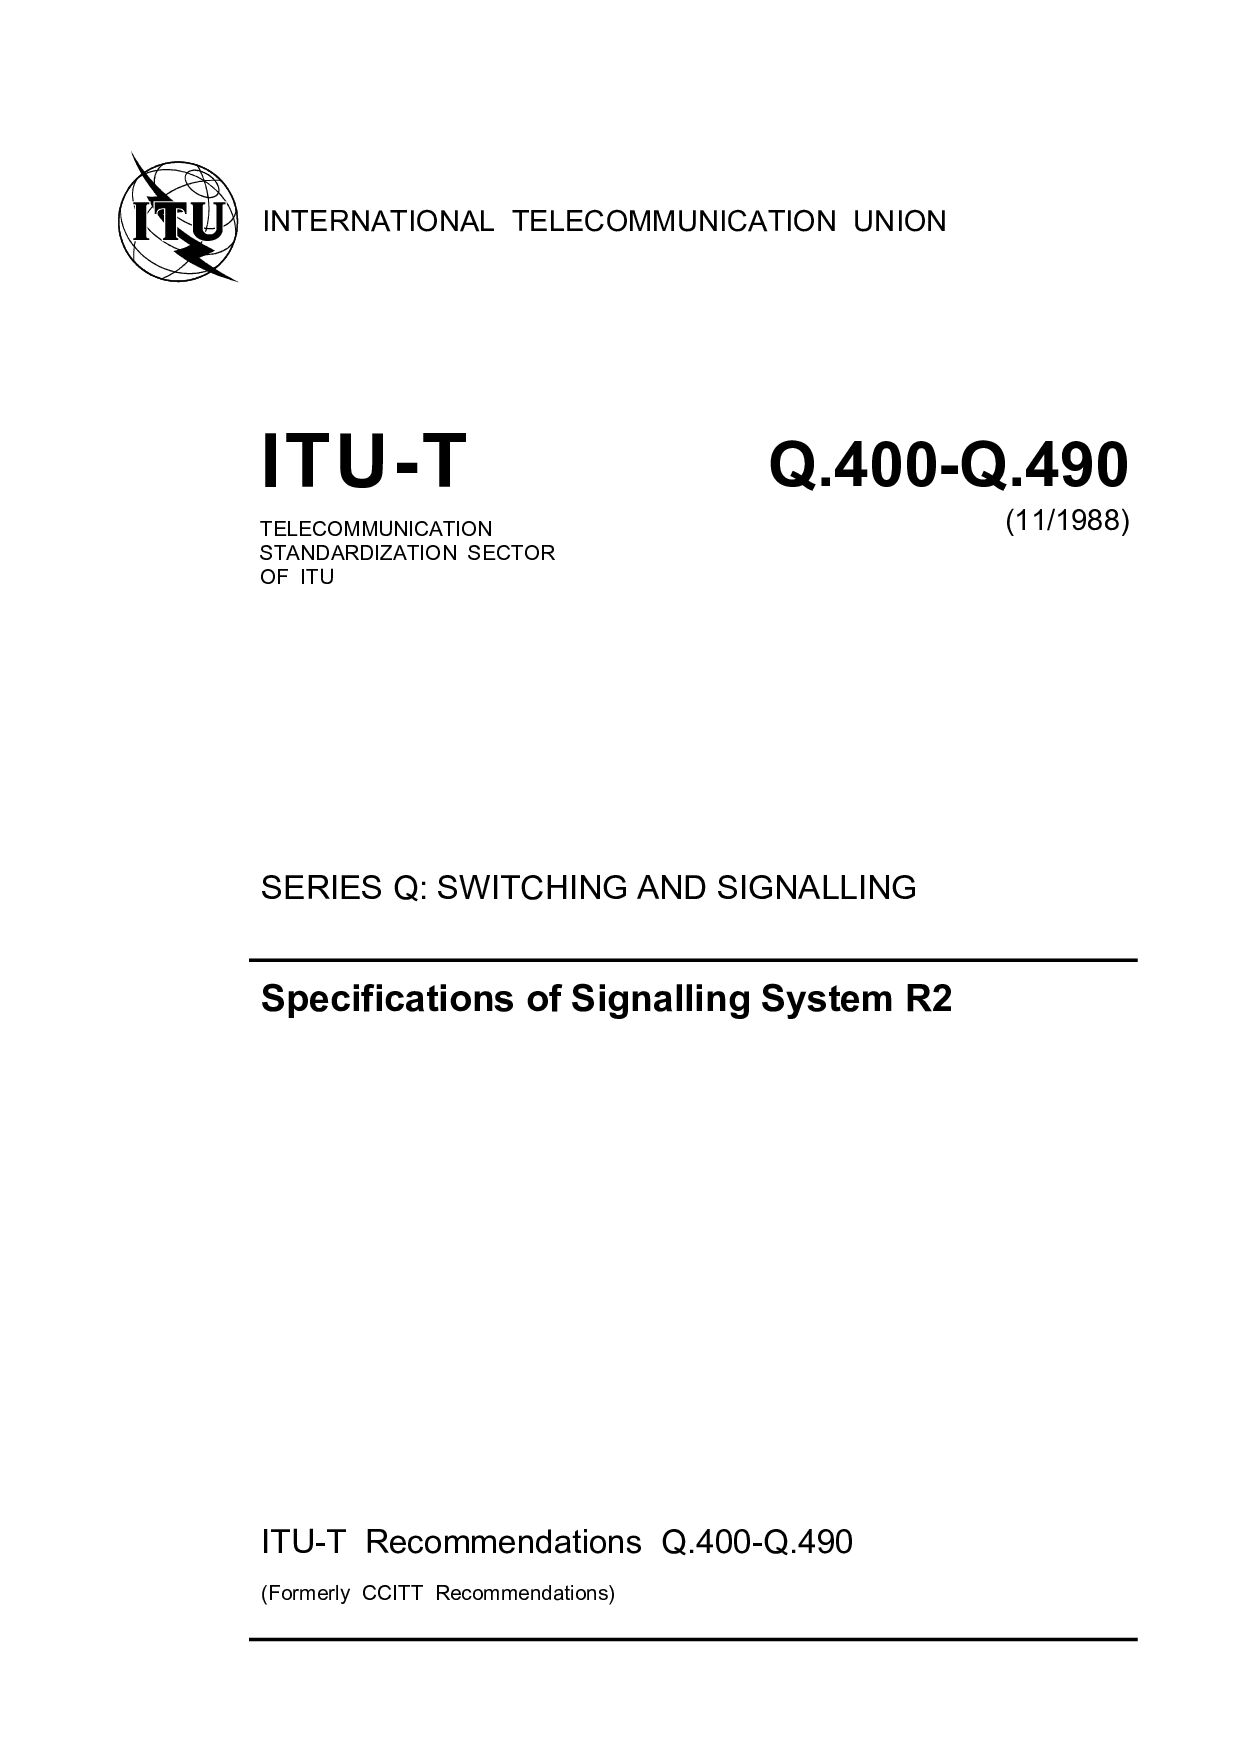 ITU-T Q.400-Q.490-1988封面图